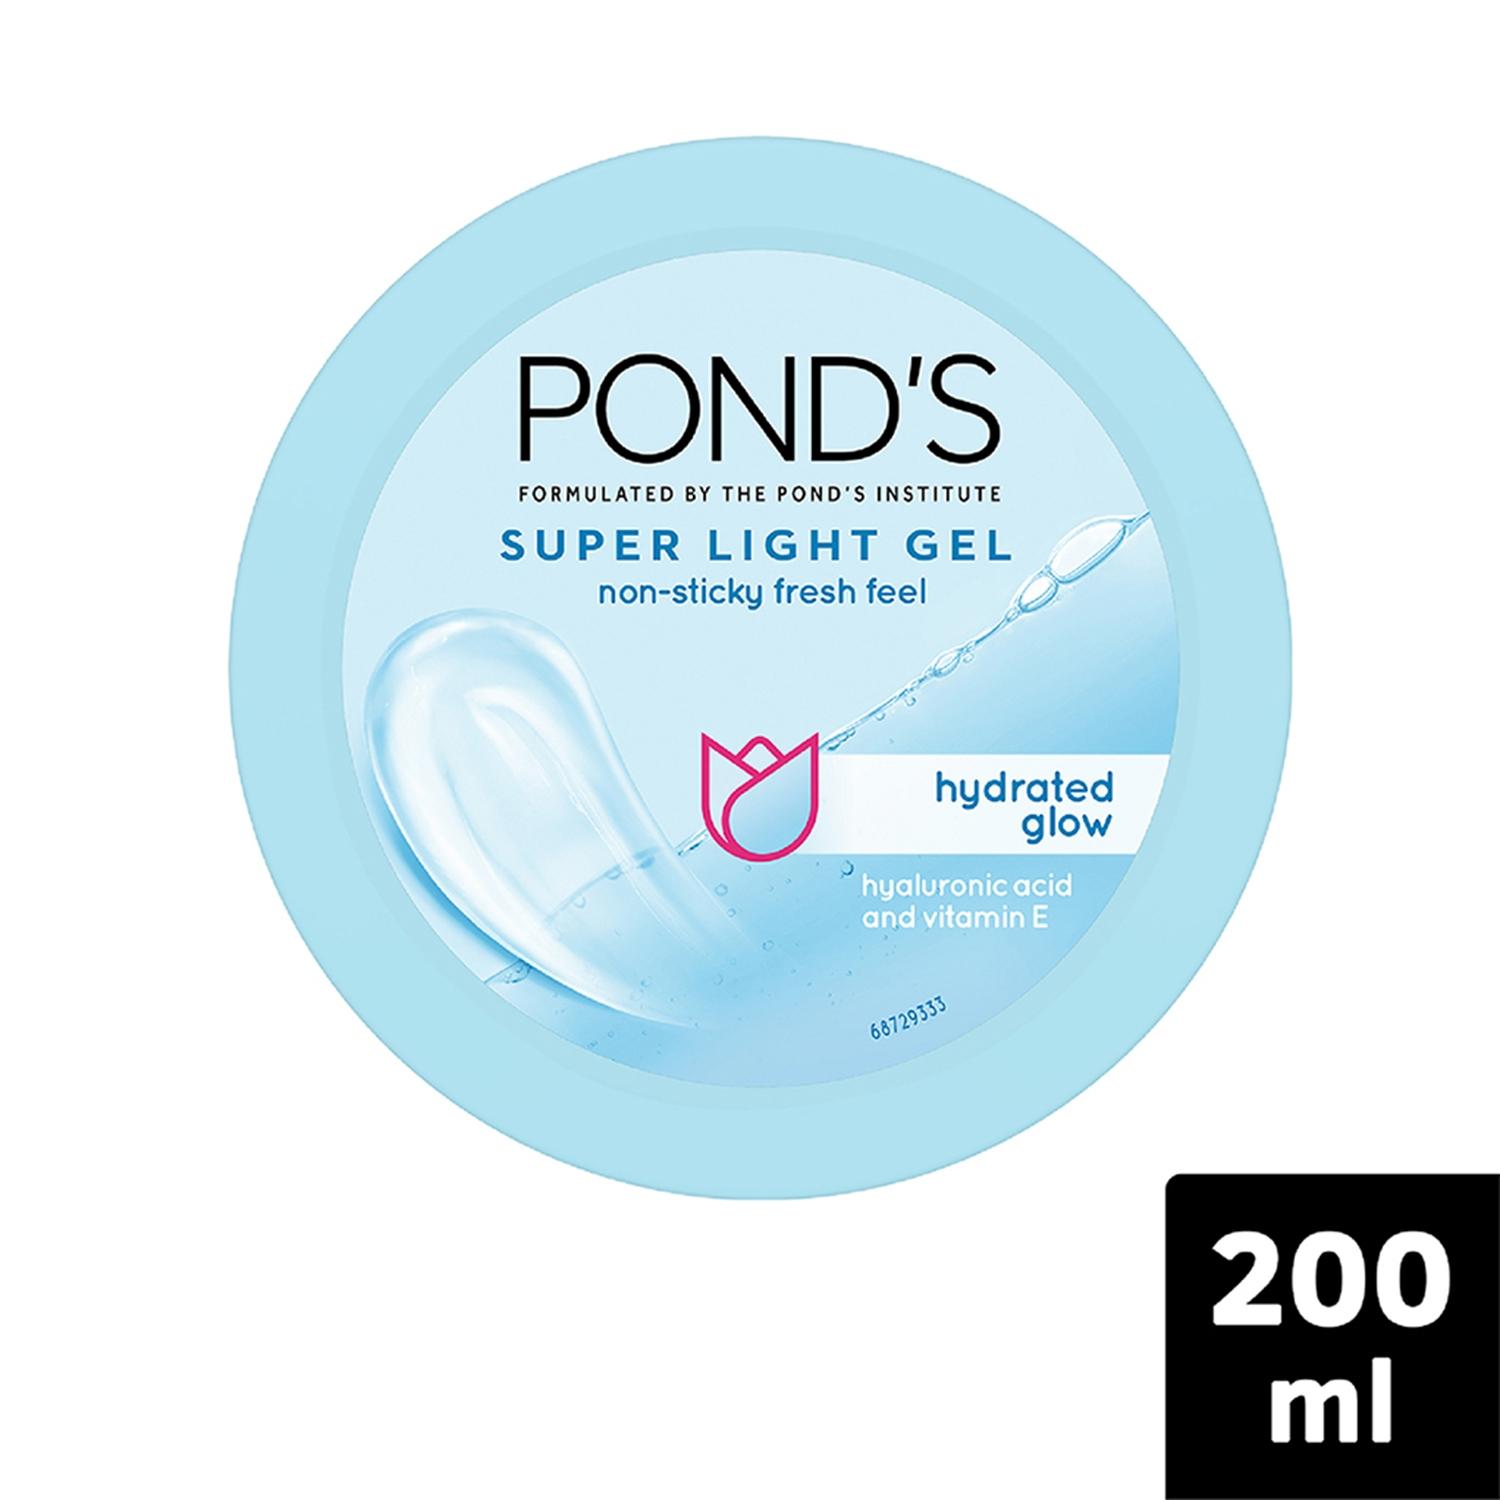 pond's-super-light-gel-oil-free-moisturizer-with-hyaluronic-acid-&-vitamin-e-(200ml)